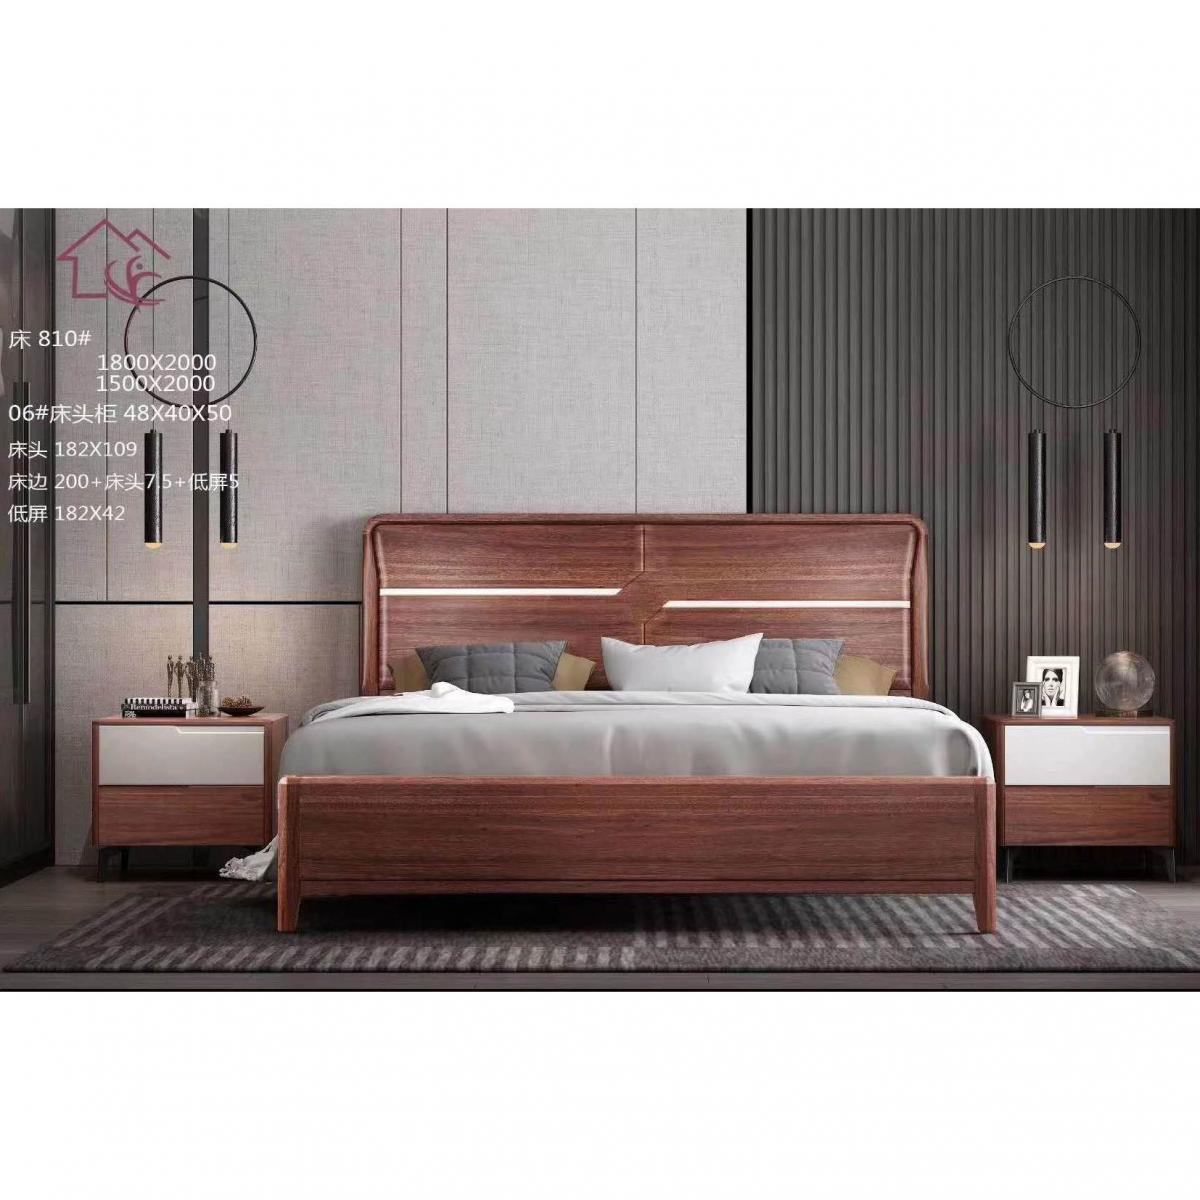 新中式全实木床现代简约1.8米双人床主卧轻奢禅意古典家具